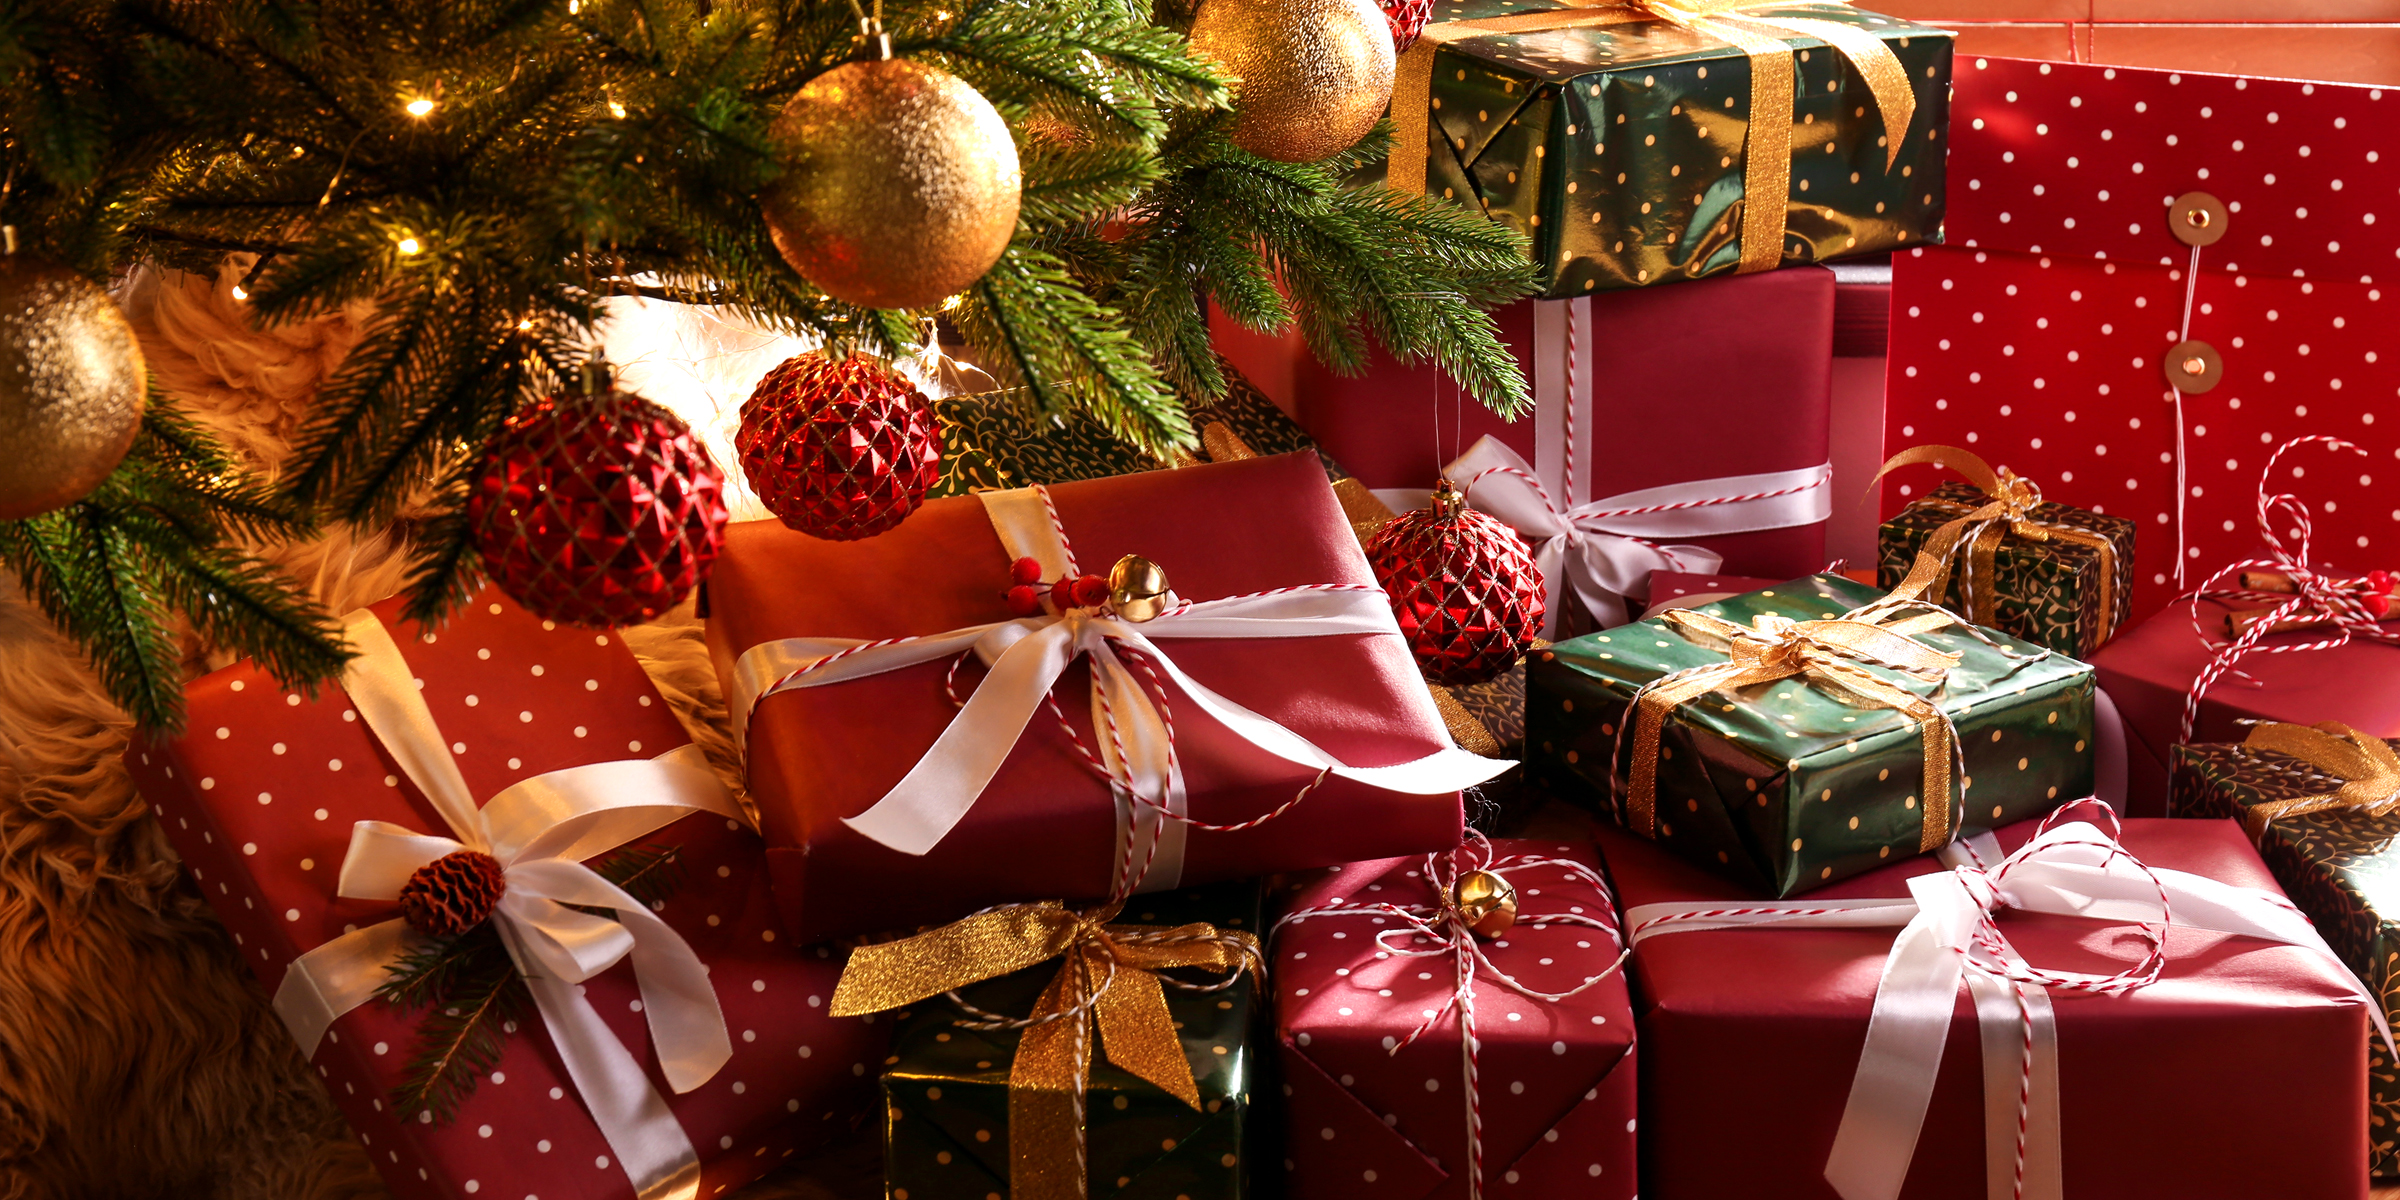 Cadeaux de Noël sous un sapin | Source : Shutterstock